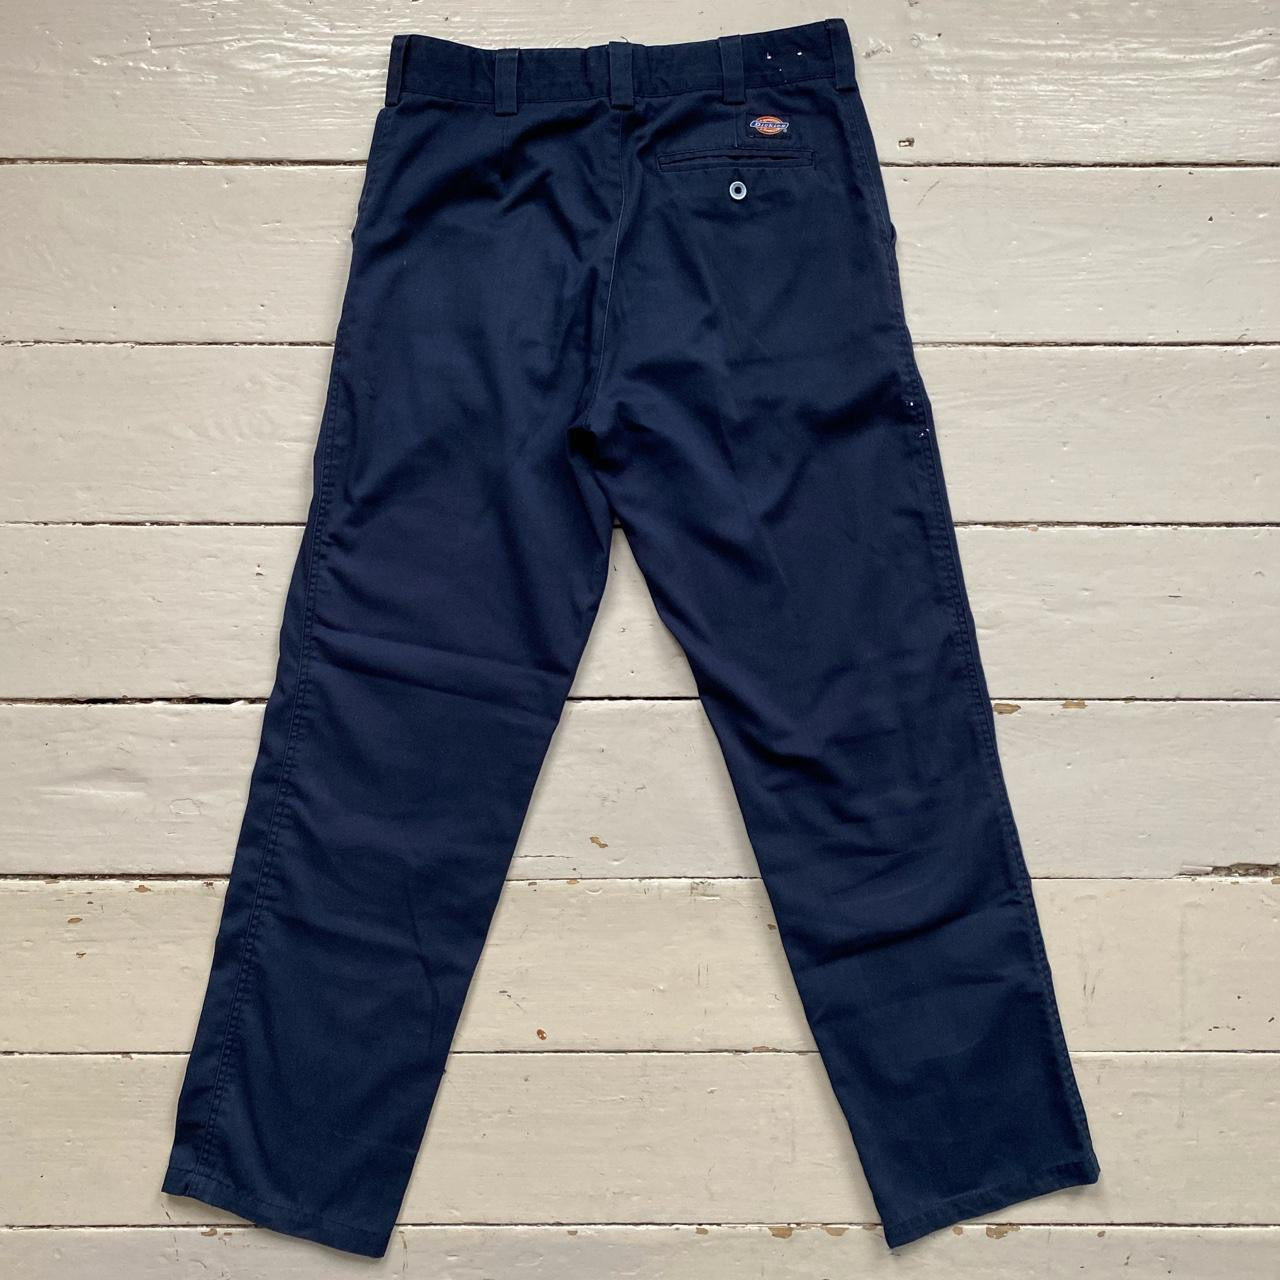 Dickies Navy Trousers (32/33)